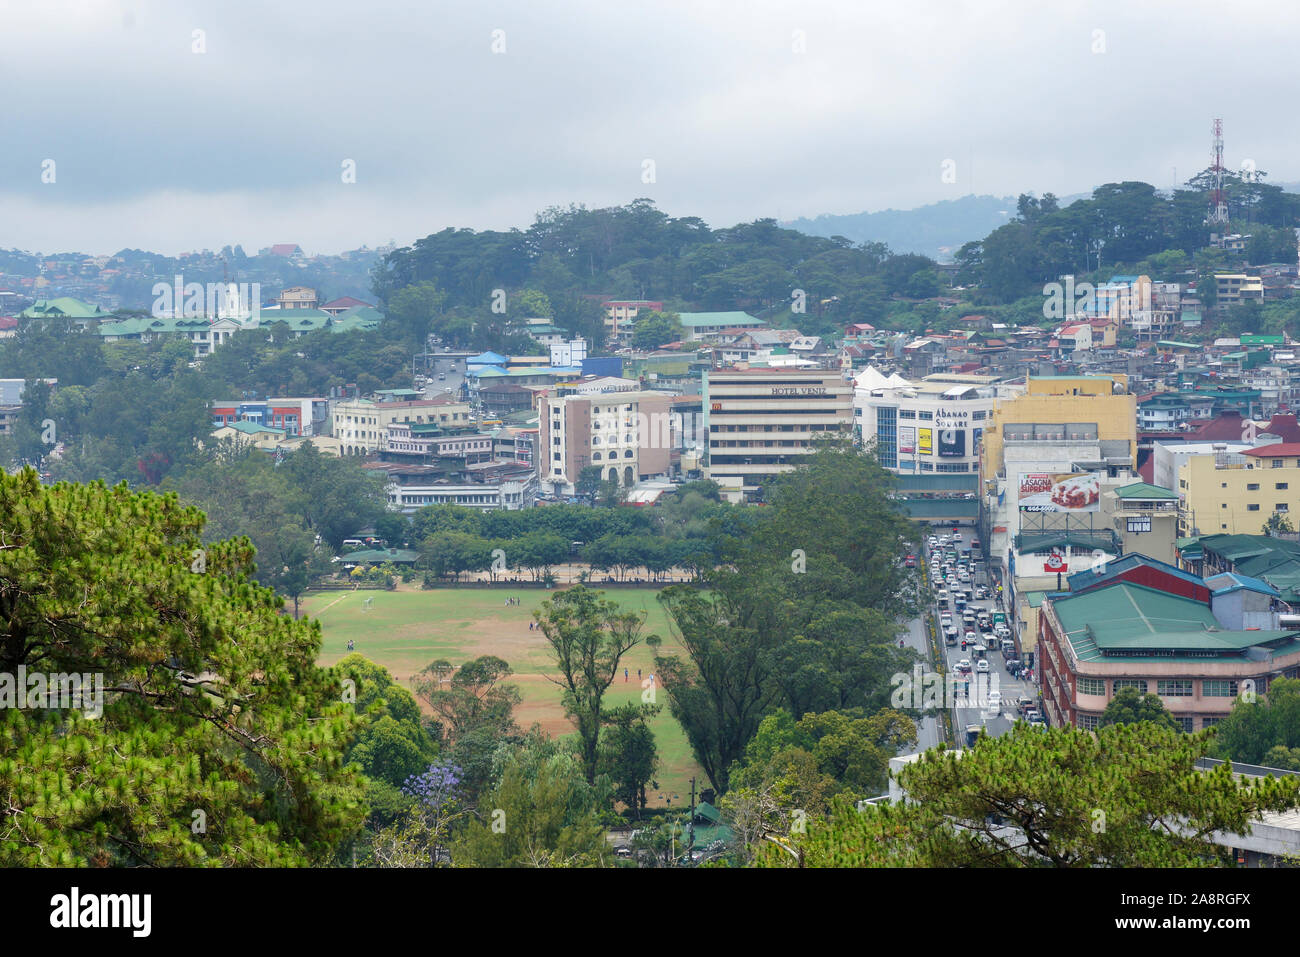 Una ciudad con vista verde en un área de las tierras altas en las Filipinas, sudeste de Asia. Foto tomada en la ciudad de Baguio, Filipinas, el 21 de abril de 2014. Foto de stock